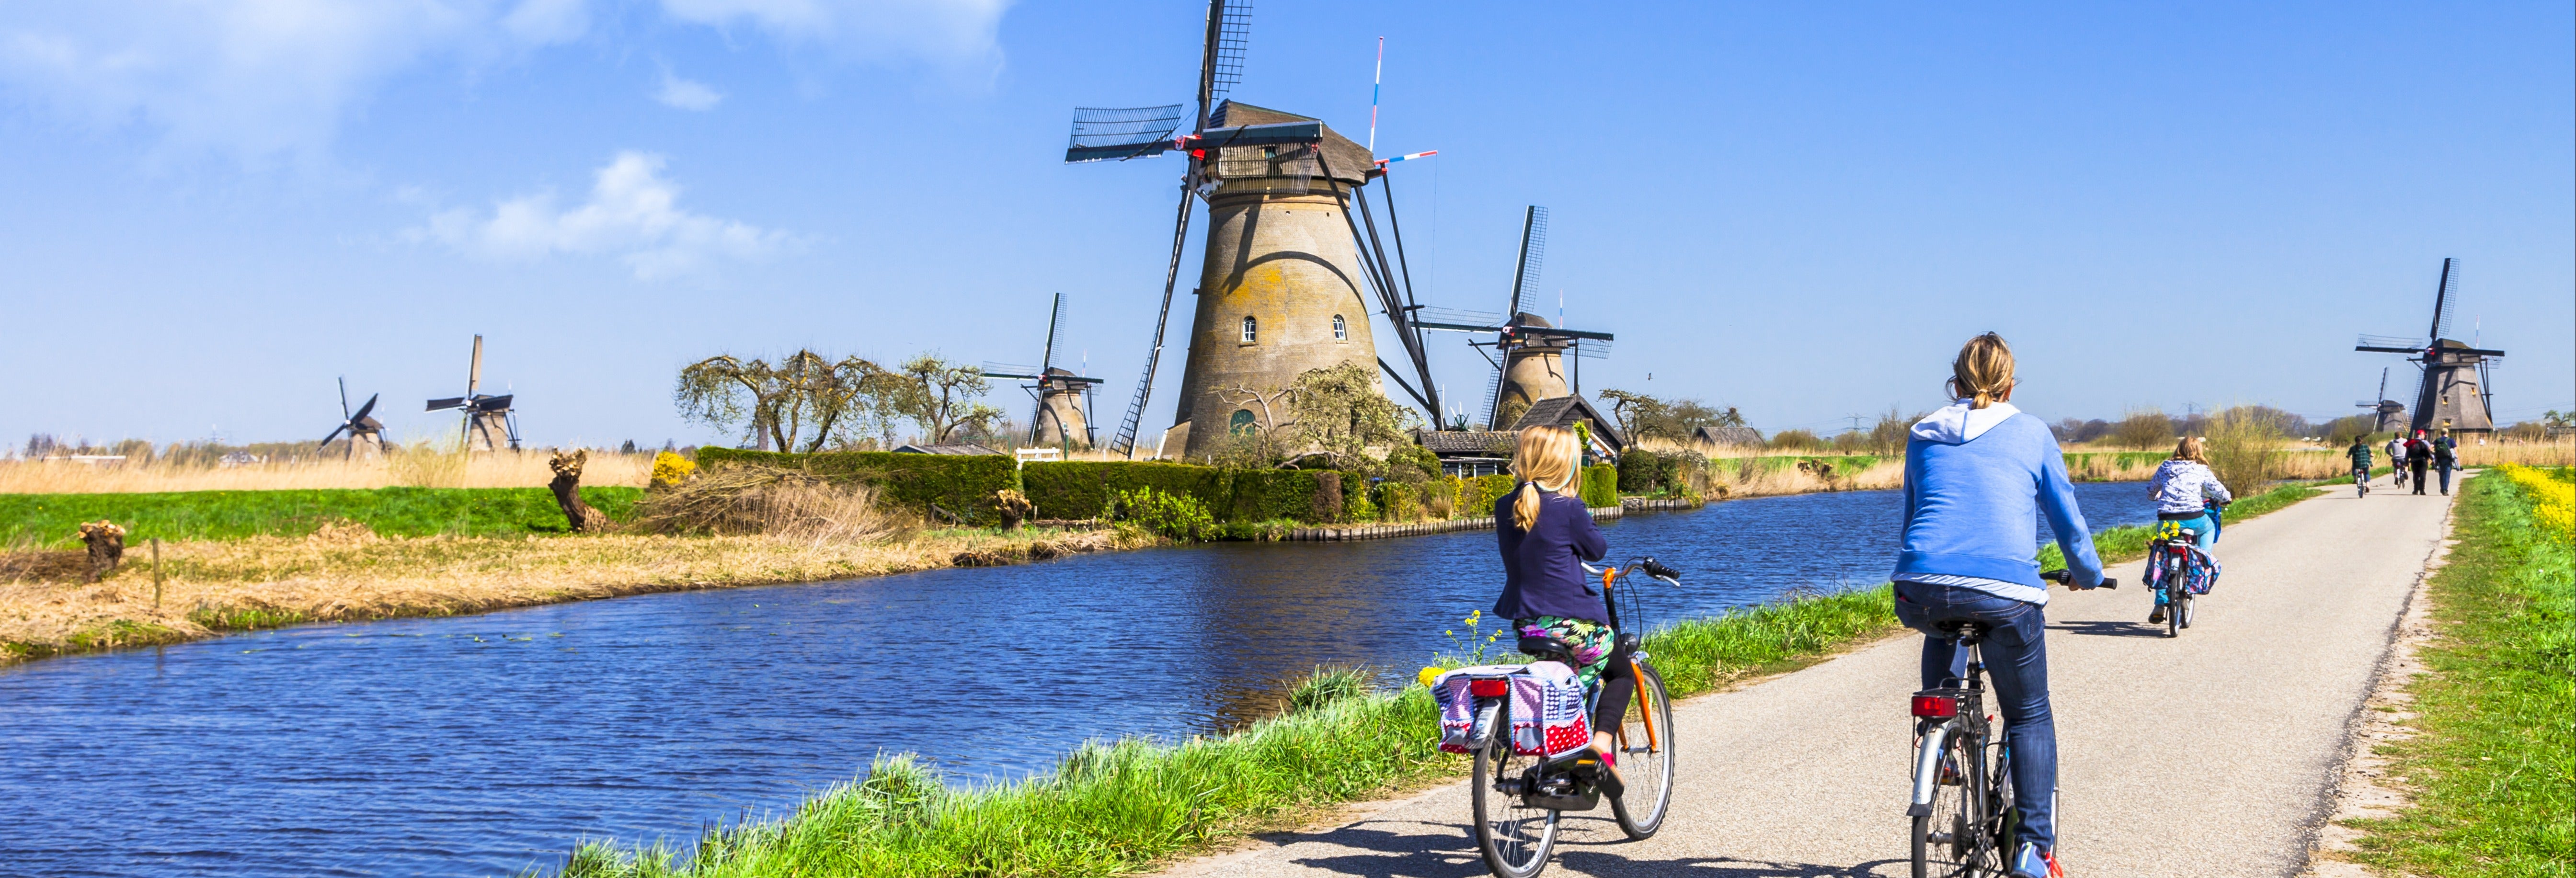 Tour en bicicleta por la campiña holandesa